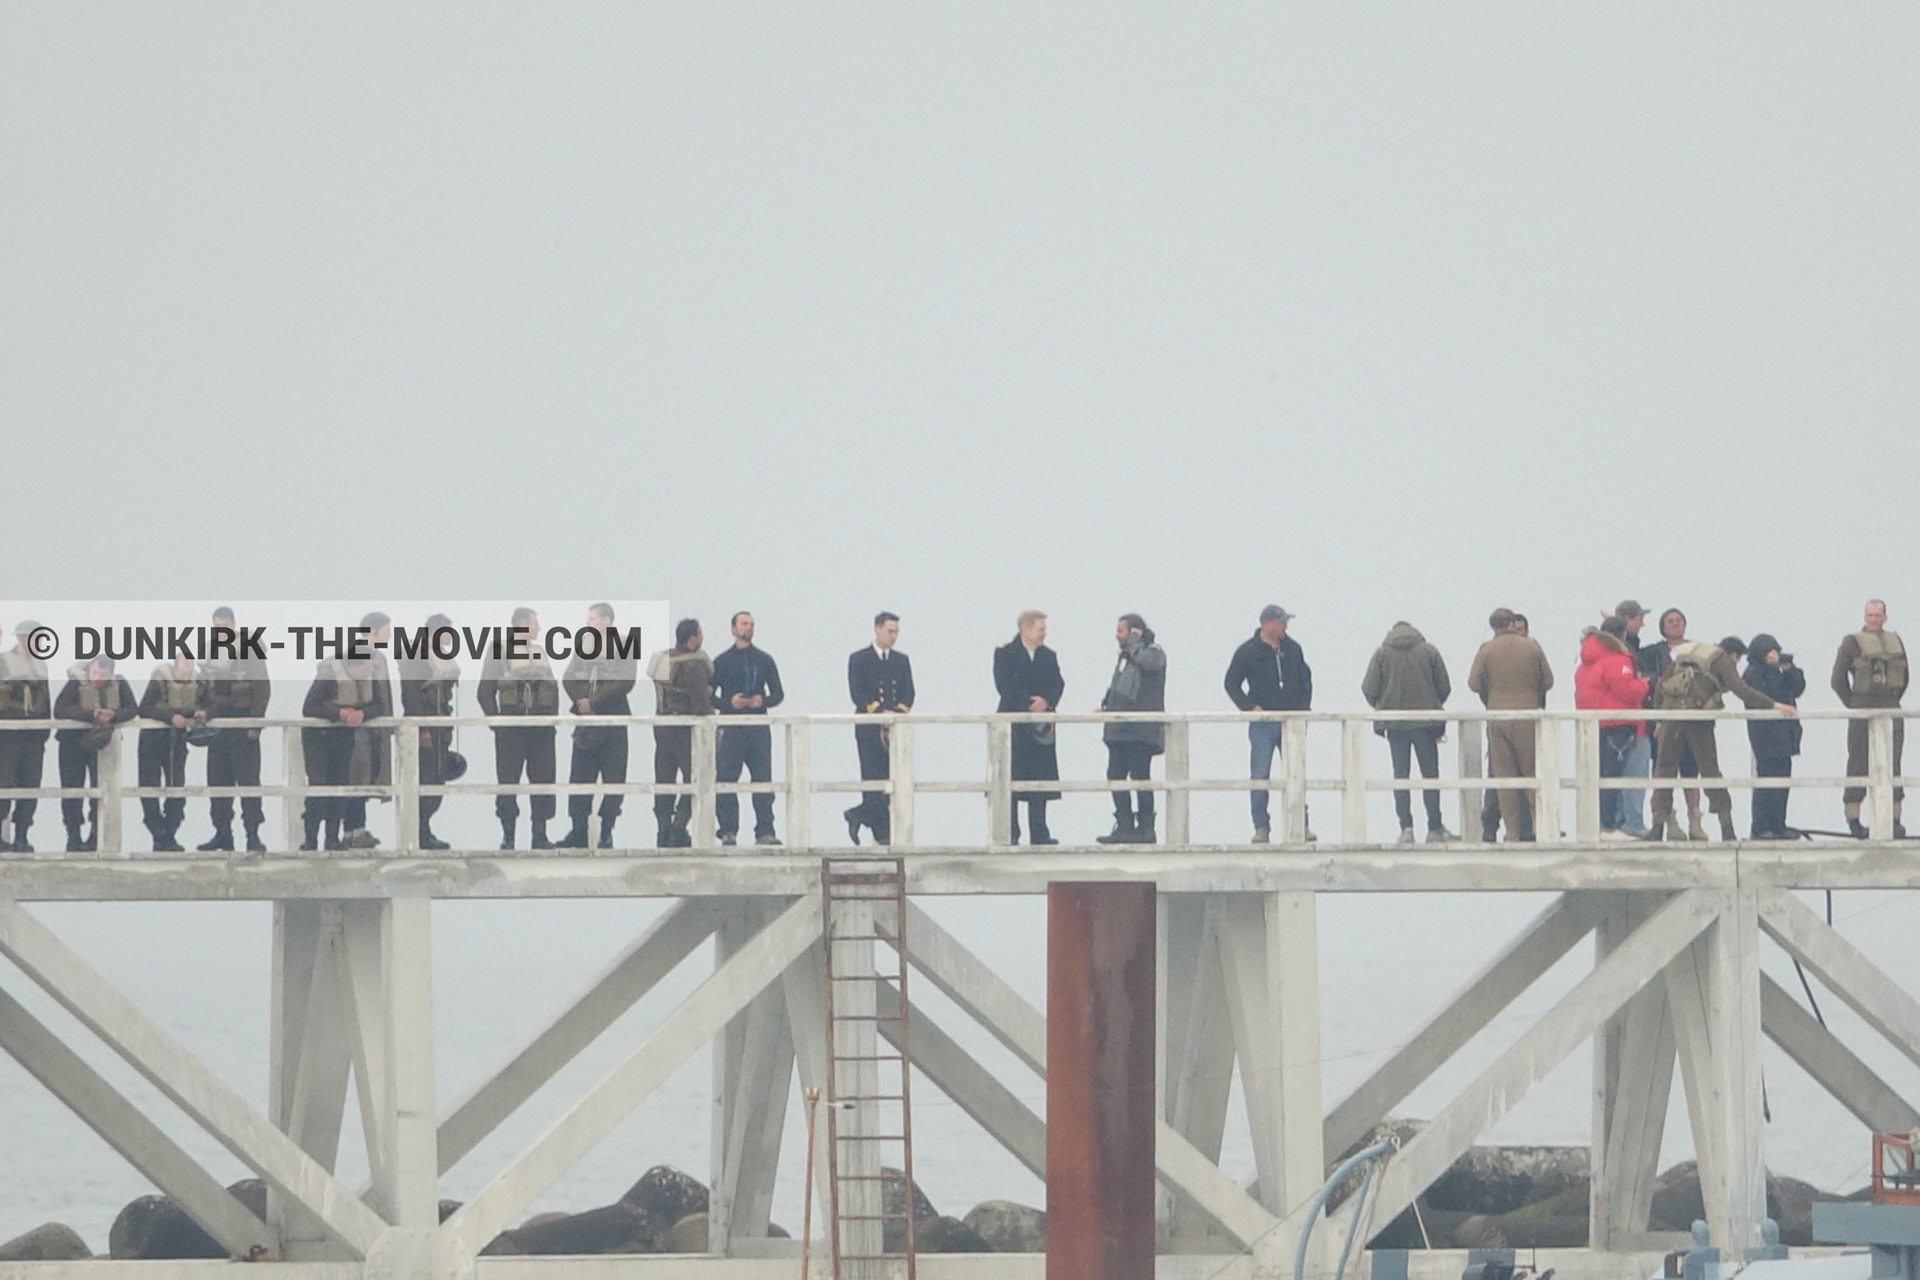 Fotos con actor, cielo gris, extras, Hoyte van Hoytema, muelle del ESTE, Kenneth Branagh, equipo técnica,  durante el rodaje de la película Dunkerque de Nolan